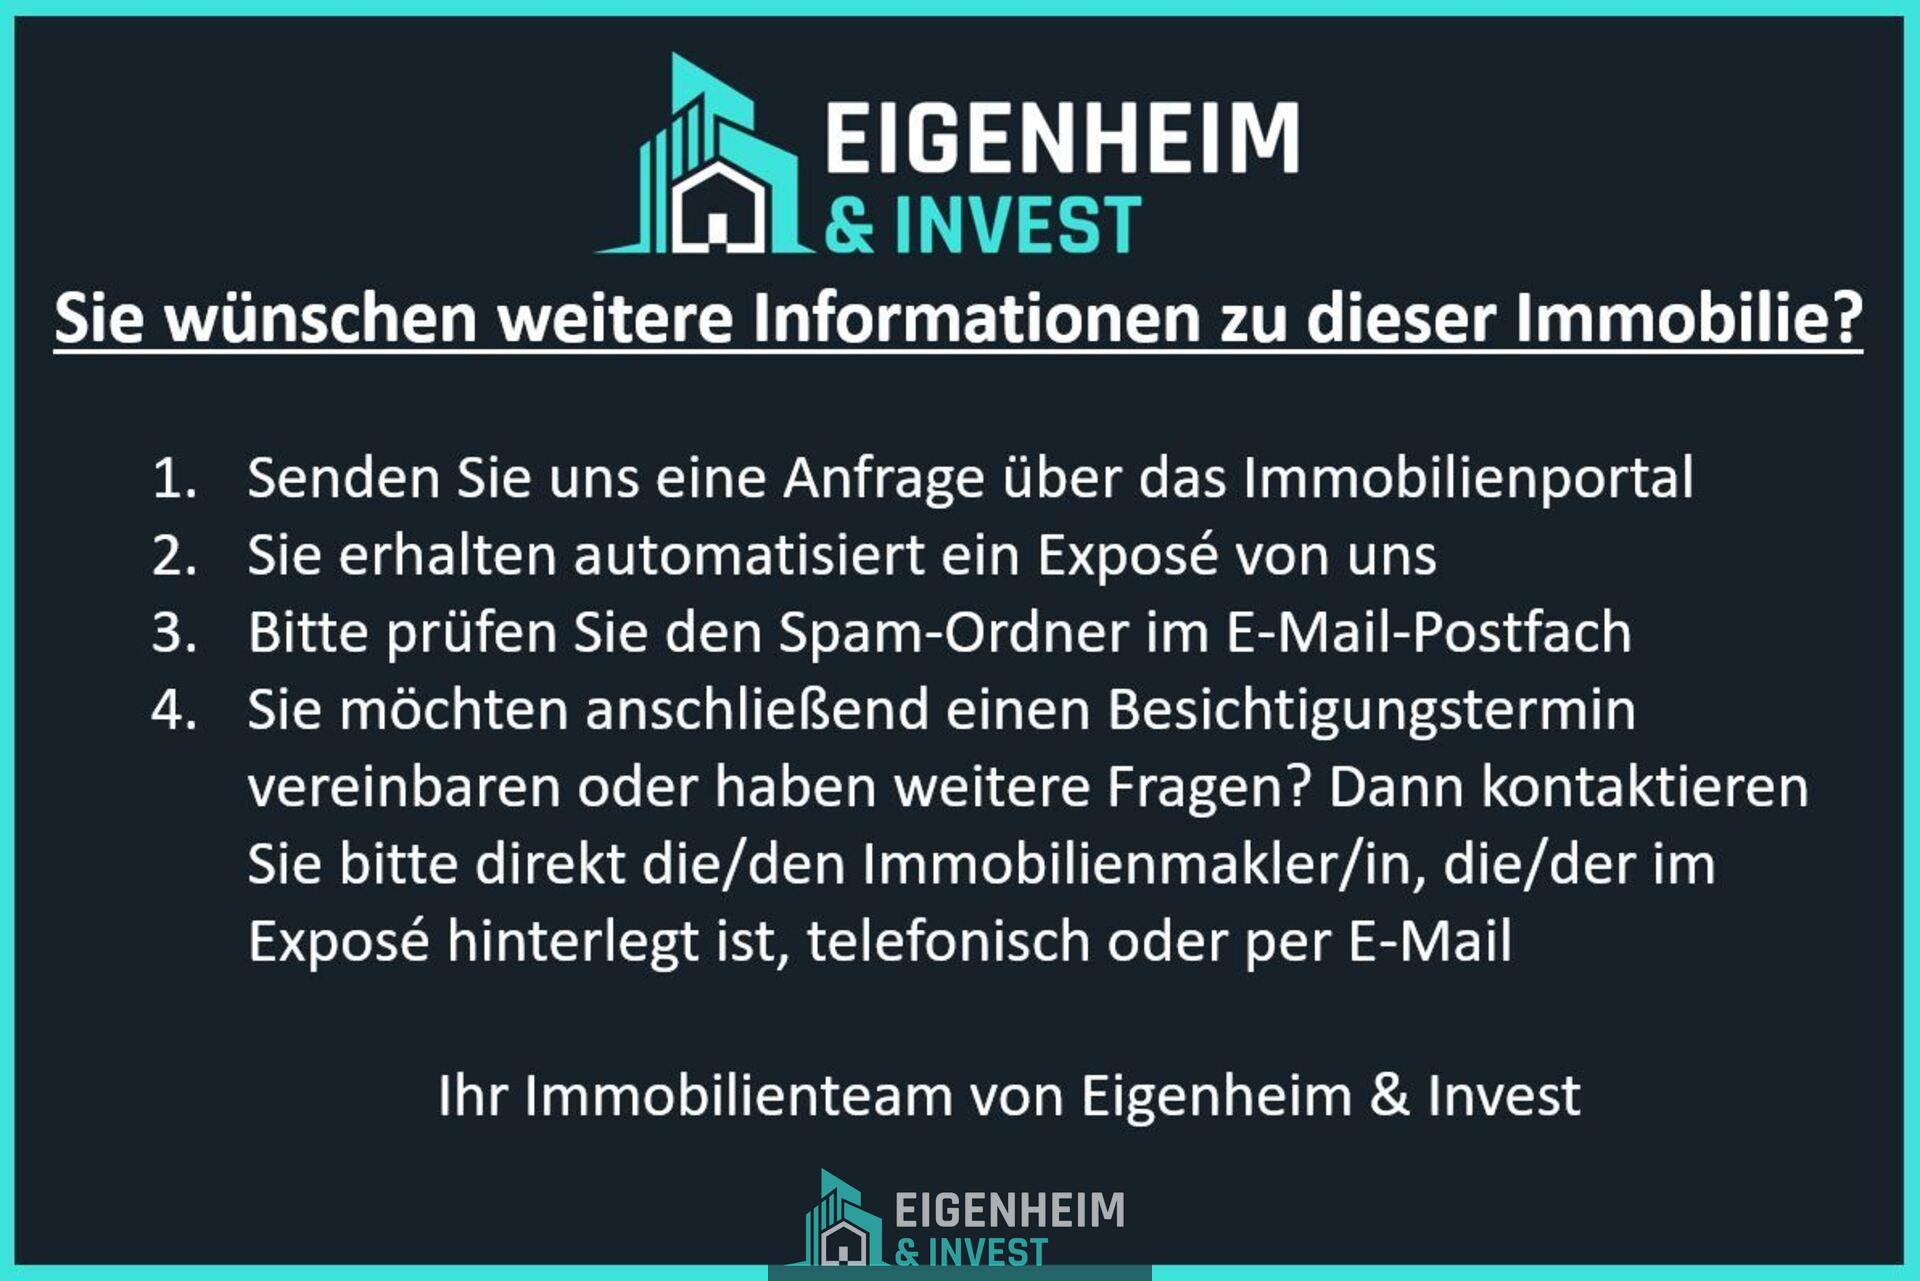 Ihr Team von Eigenheim & Invest